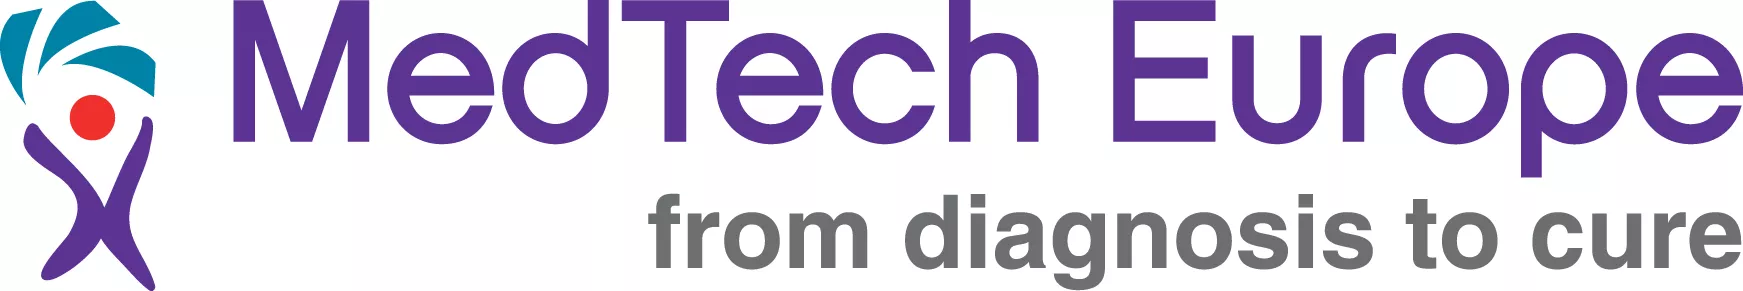 MedTech Europa logo